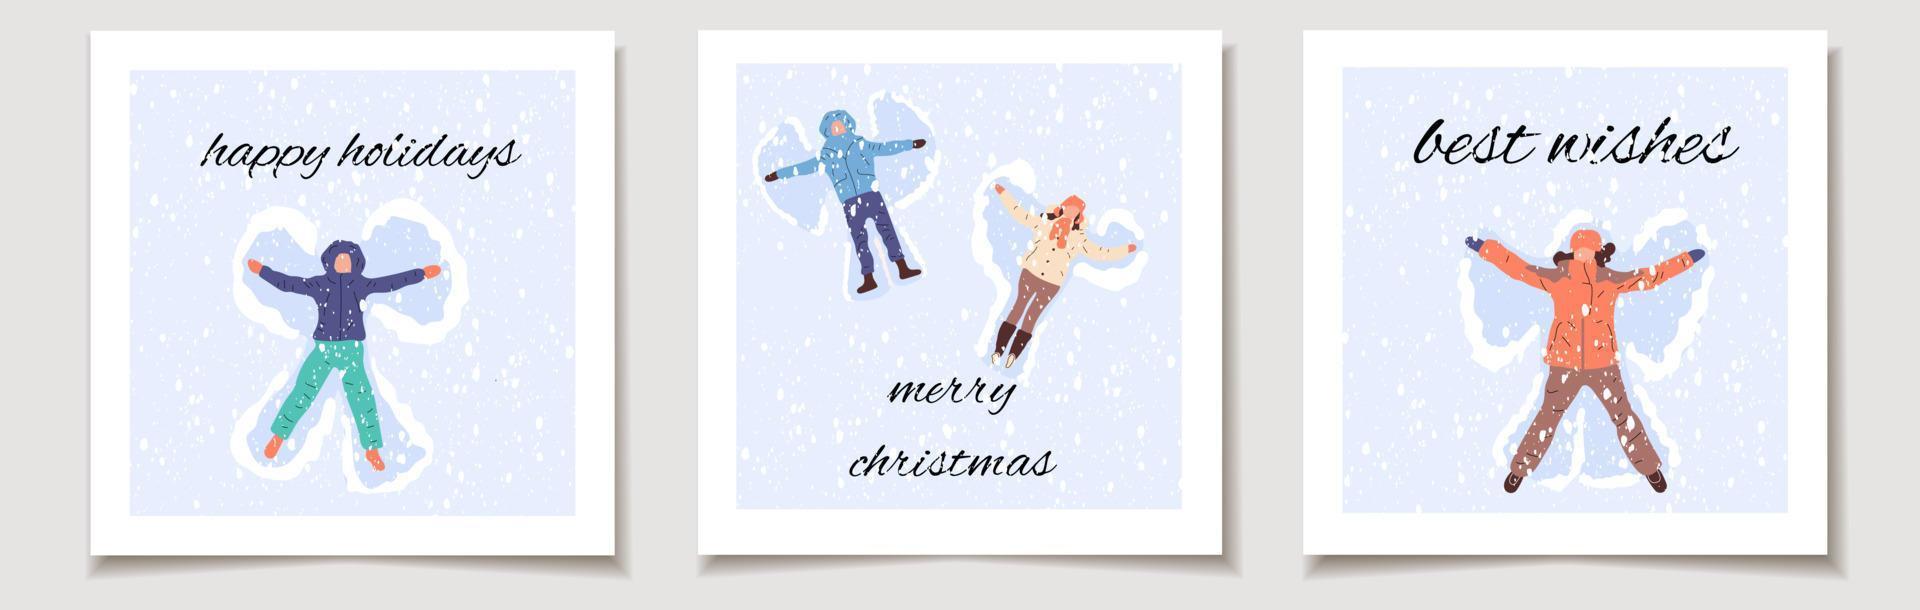 carte-cadeau de vecteur de noël ou étiquette noël ensemble de trois personnes heureuses faisant un ange de neige. joyeux noël lettrage, meilleurs voeux.